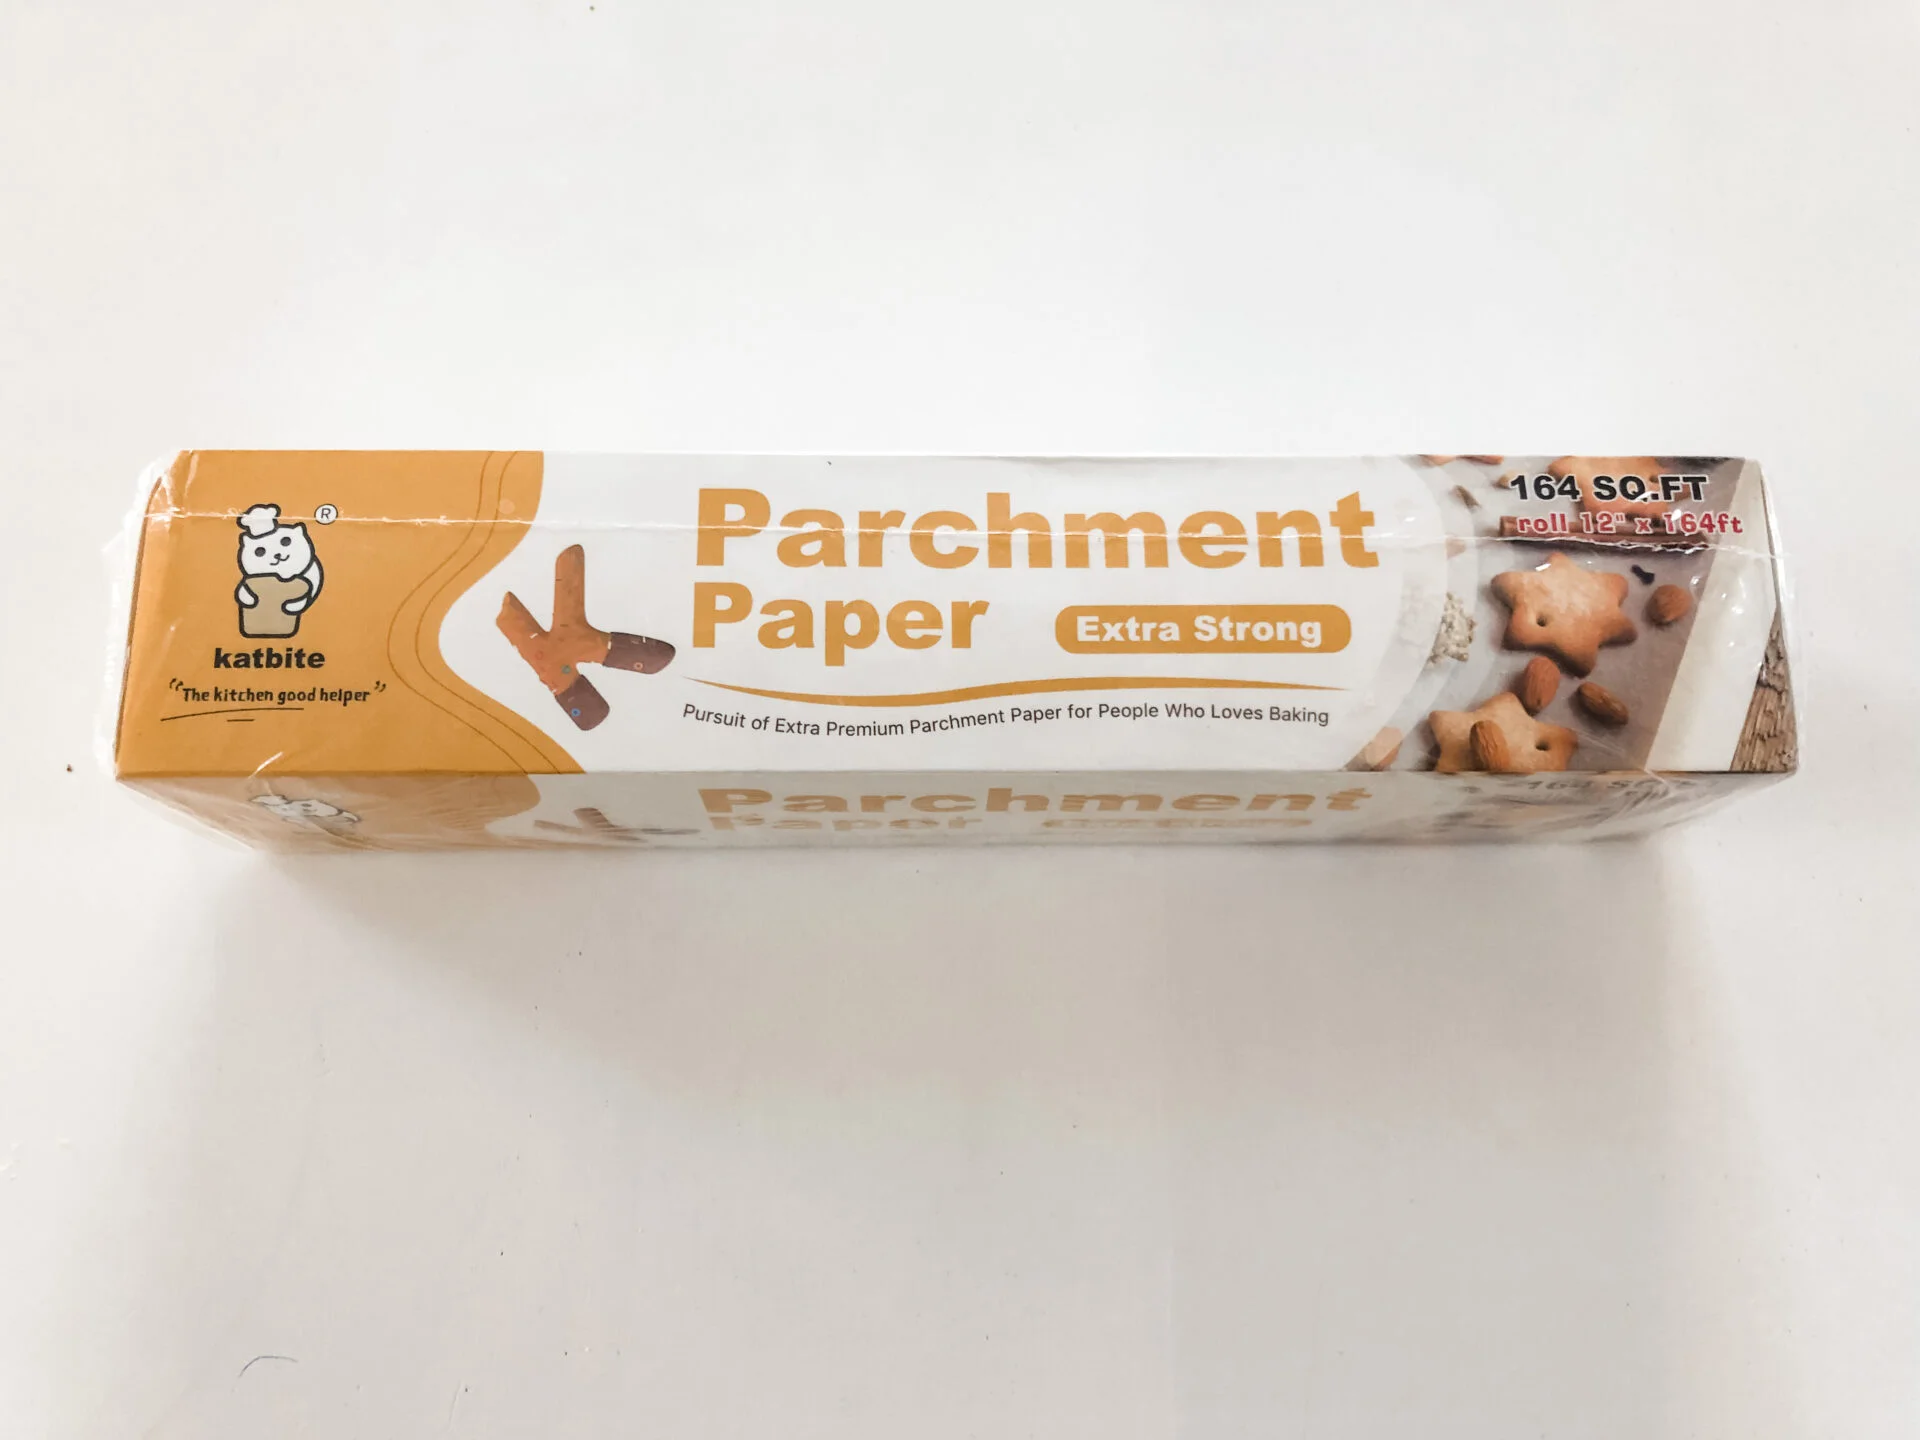 Katbite parchment baking paper